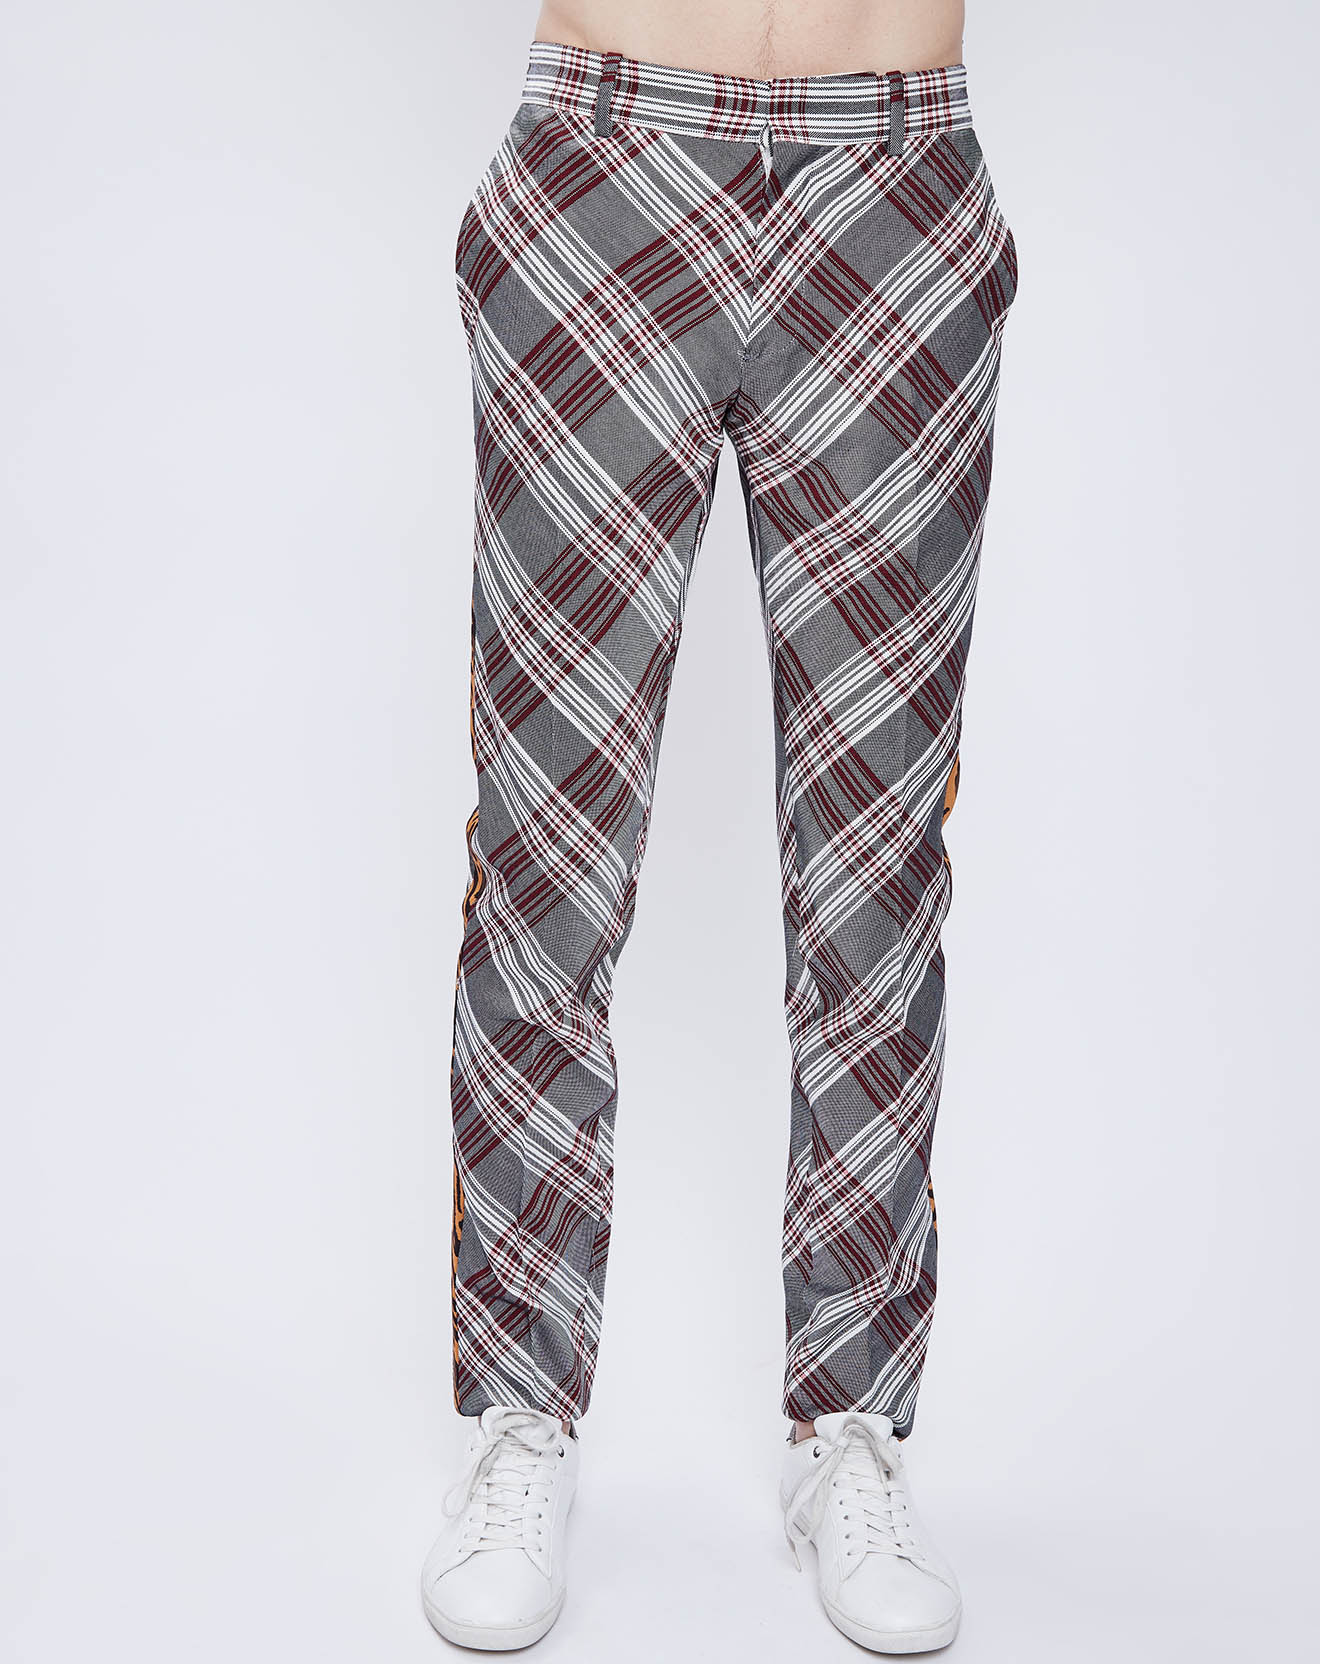 Pantalon en Laine mélangée à carreaux gris/rouge/blanc